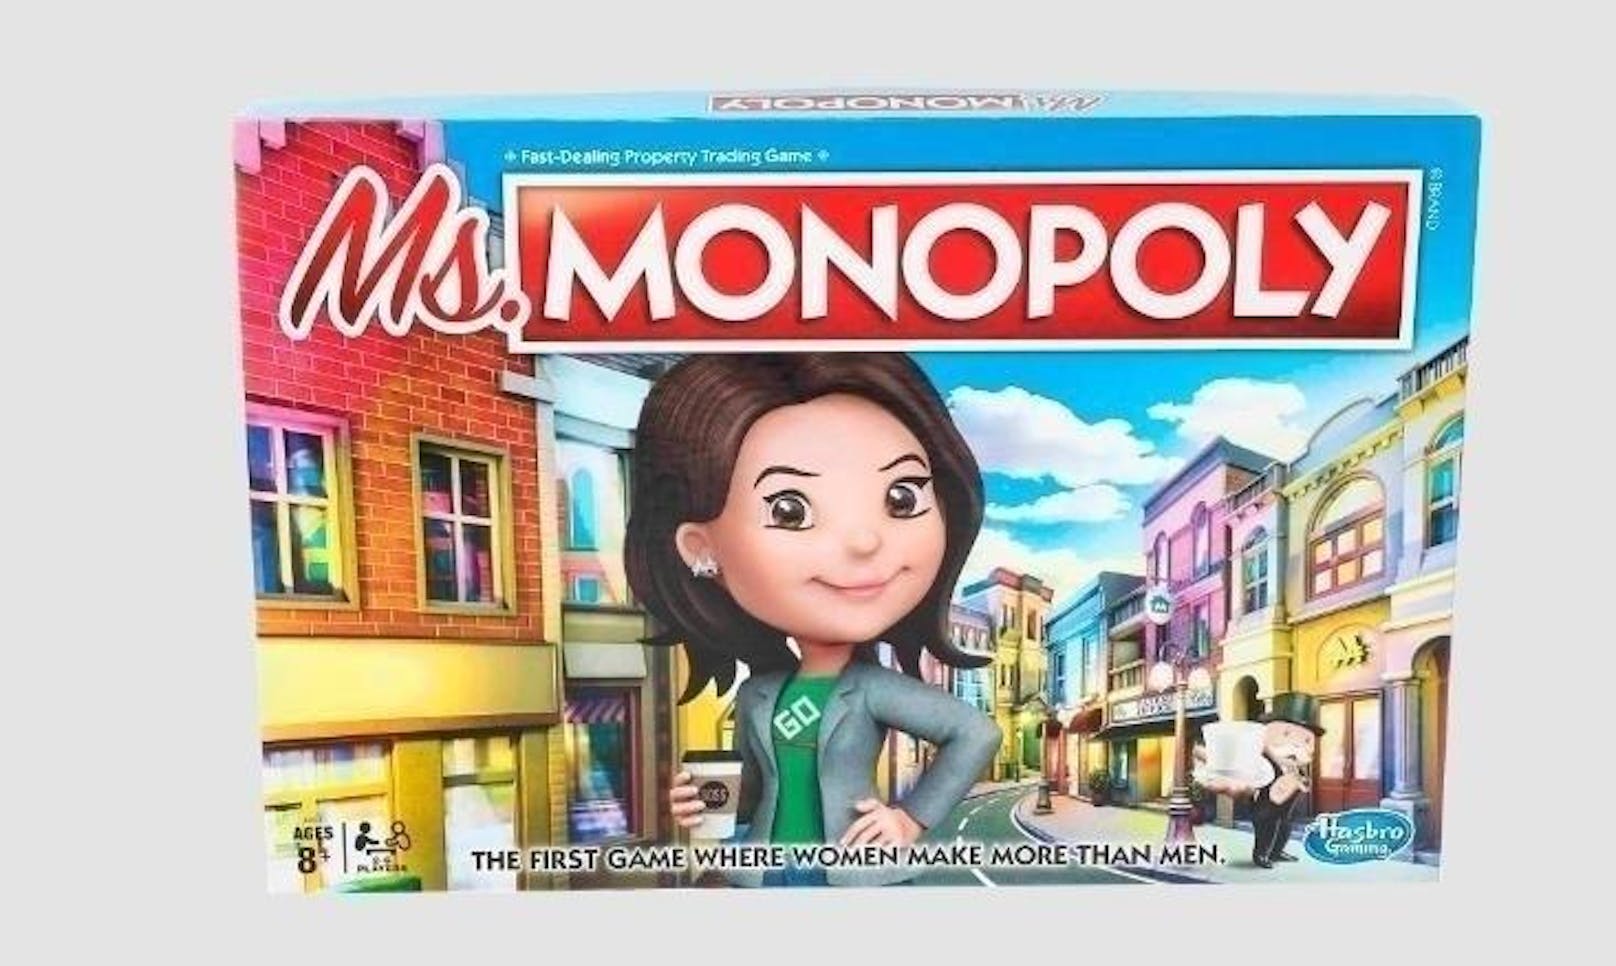 Der US-Spieleproduzent Hasbro bringt eine neue Version des Brettspiel-Klassikers Monopoly auf den Markt, bei der Frauen mehr Geld zur Verfügung haben als Männer.